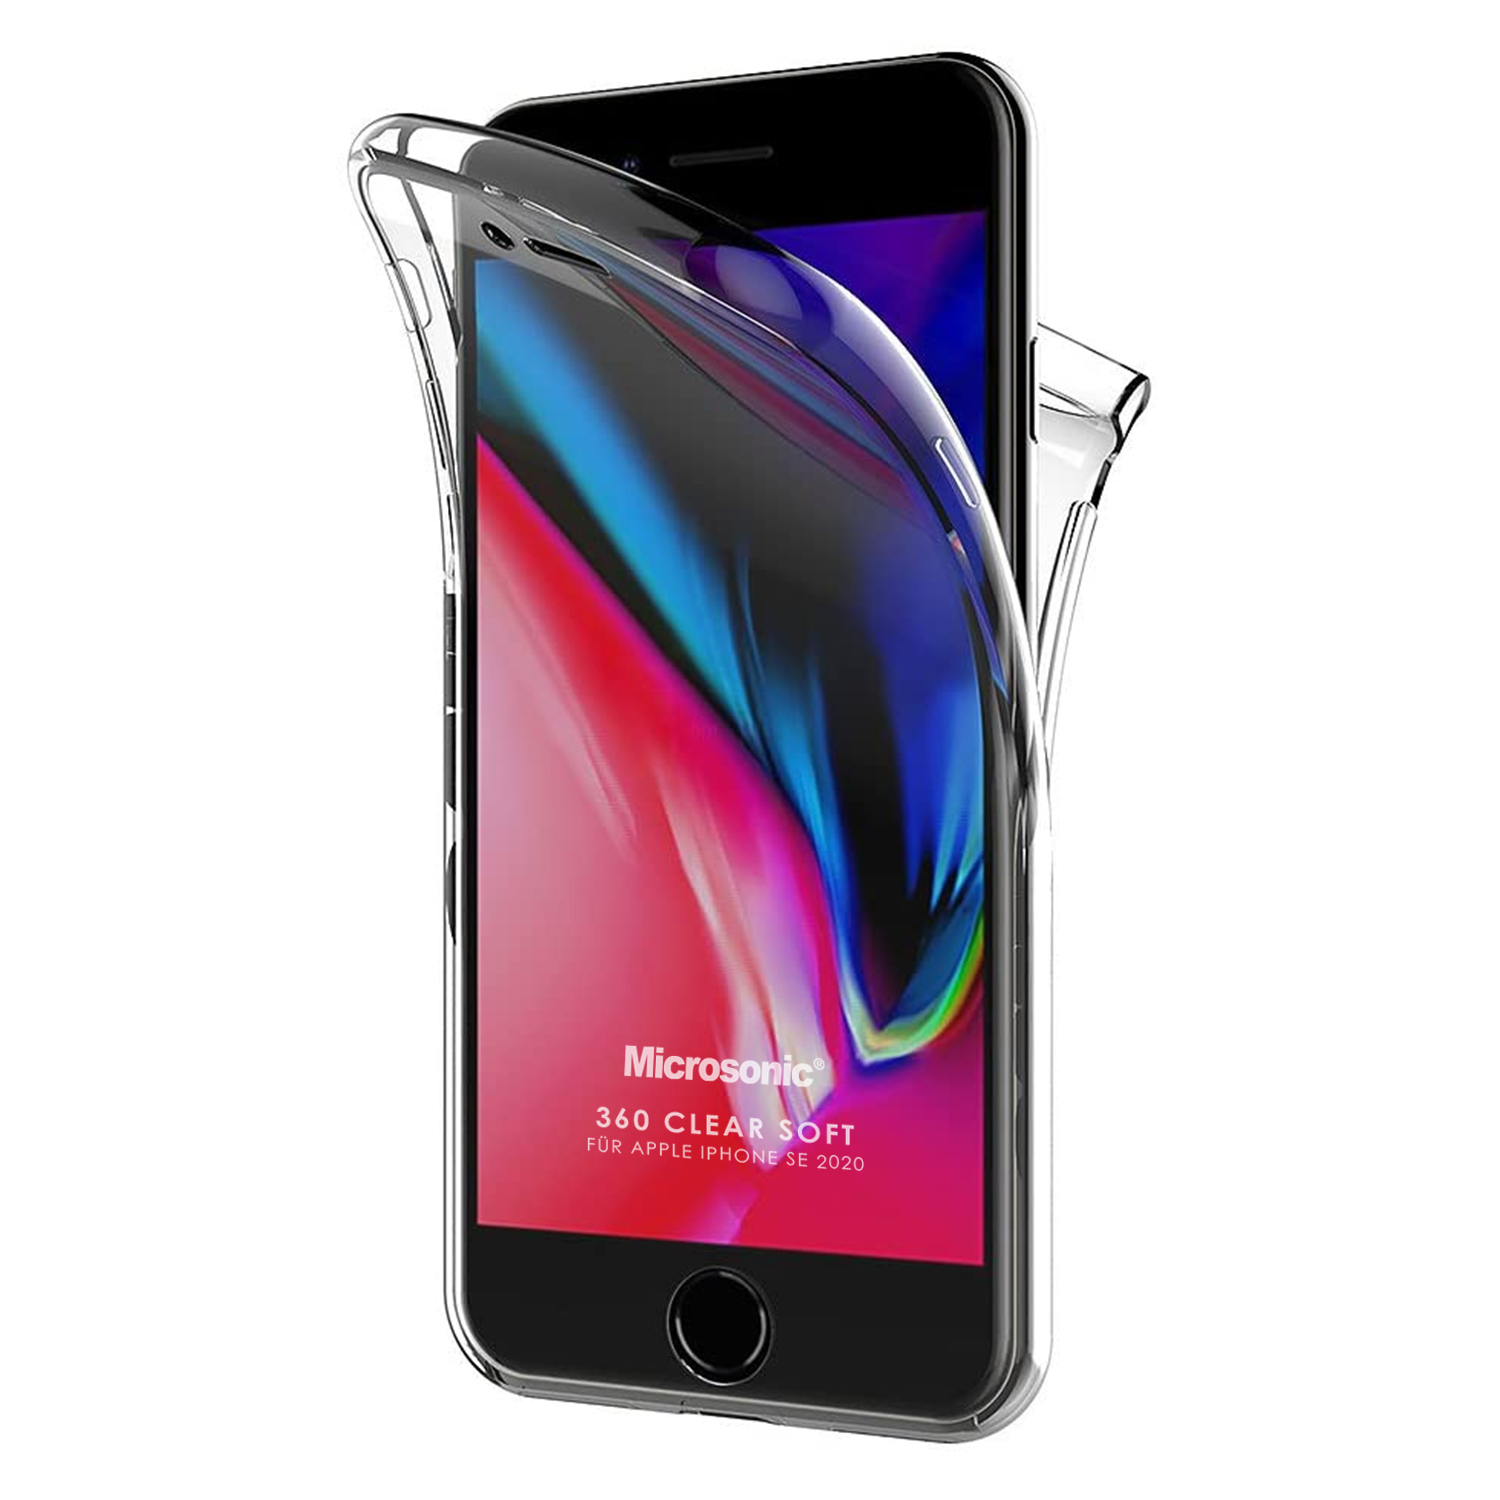 Microsonic Apple iPhone SE 2020 Kılıf 6 tarafı tam full koruma 360 Clear Soft Şeffaf